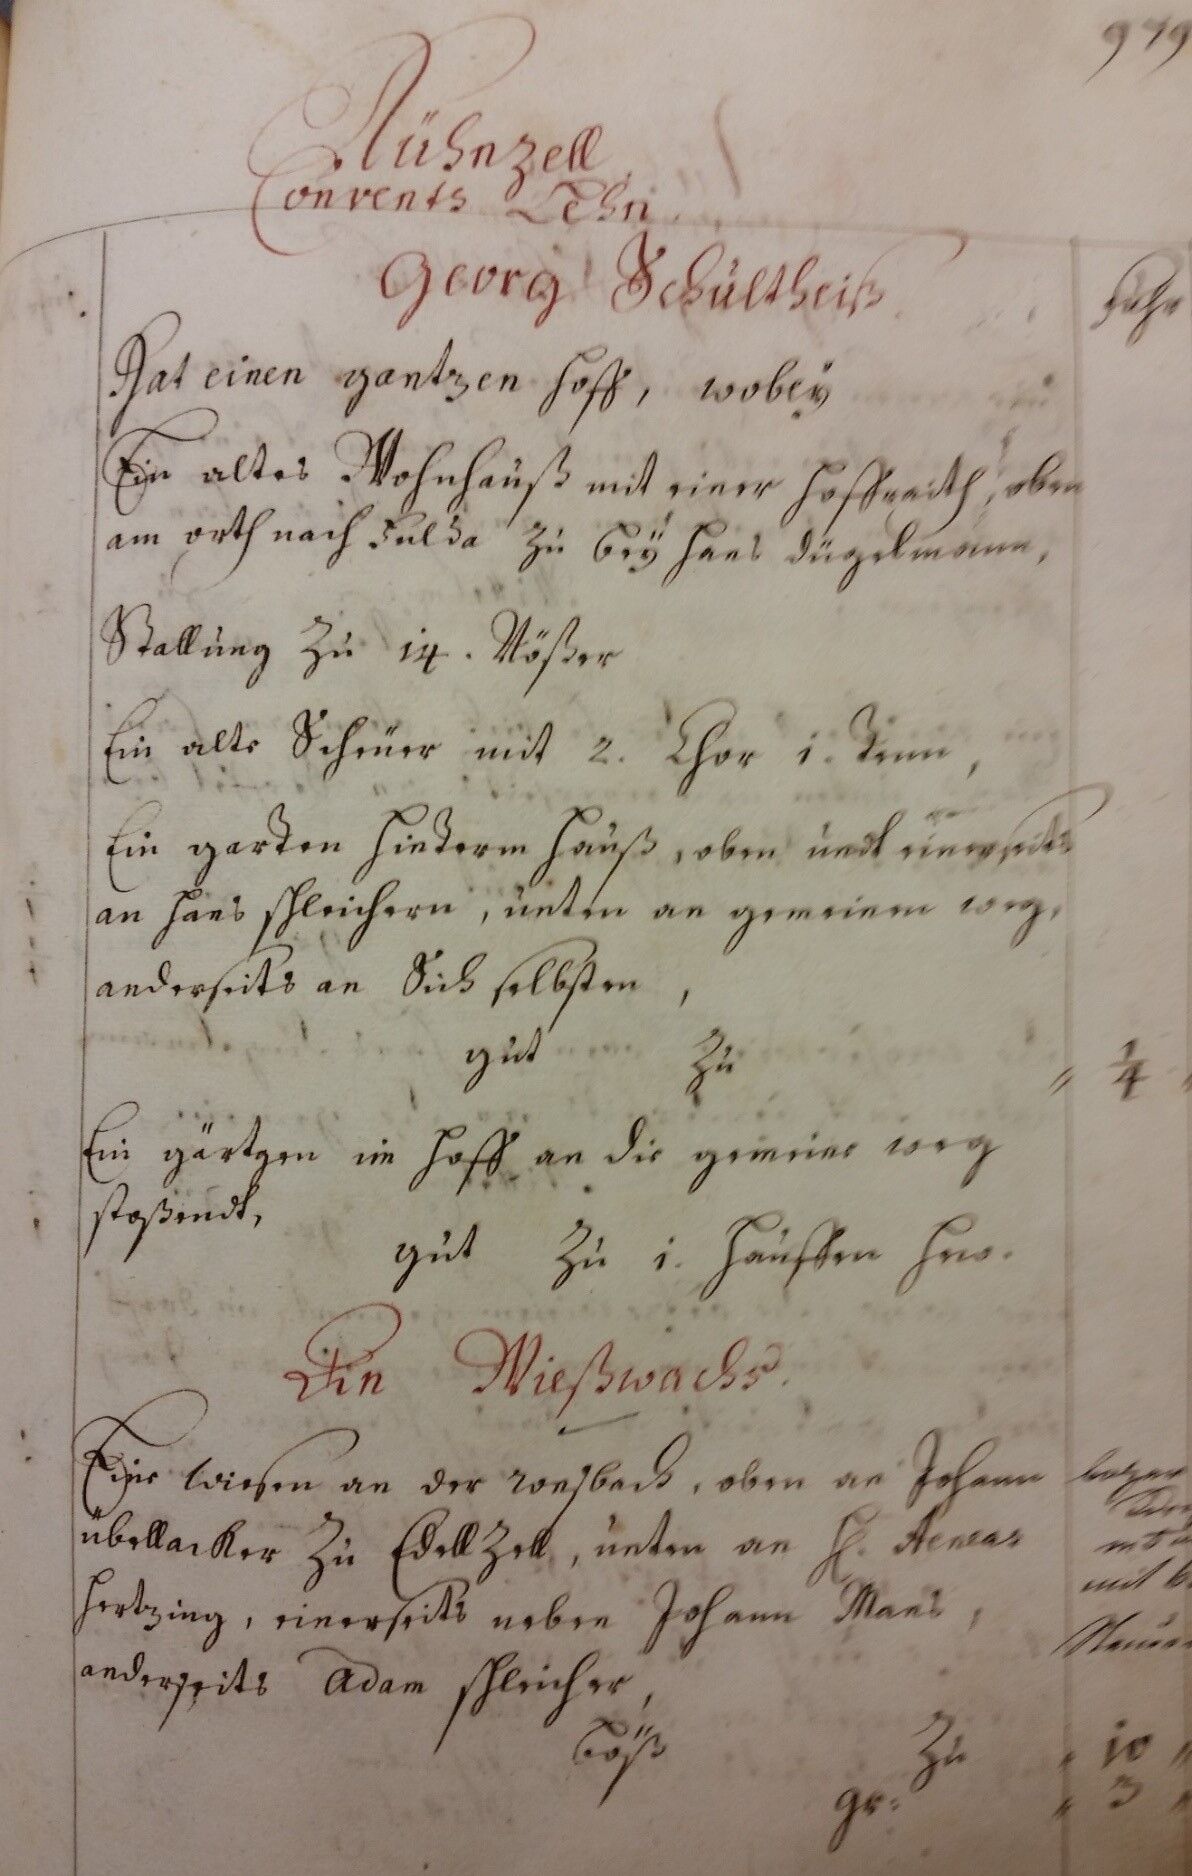 Auszug aus dem Saalbuch von 1708 - Kühnzell Convents Lehn von Georg Schultheis